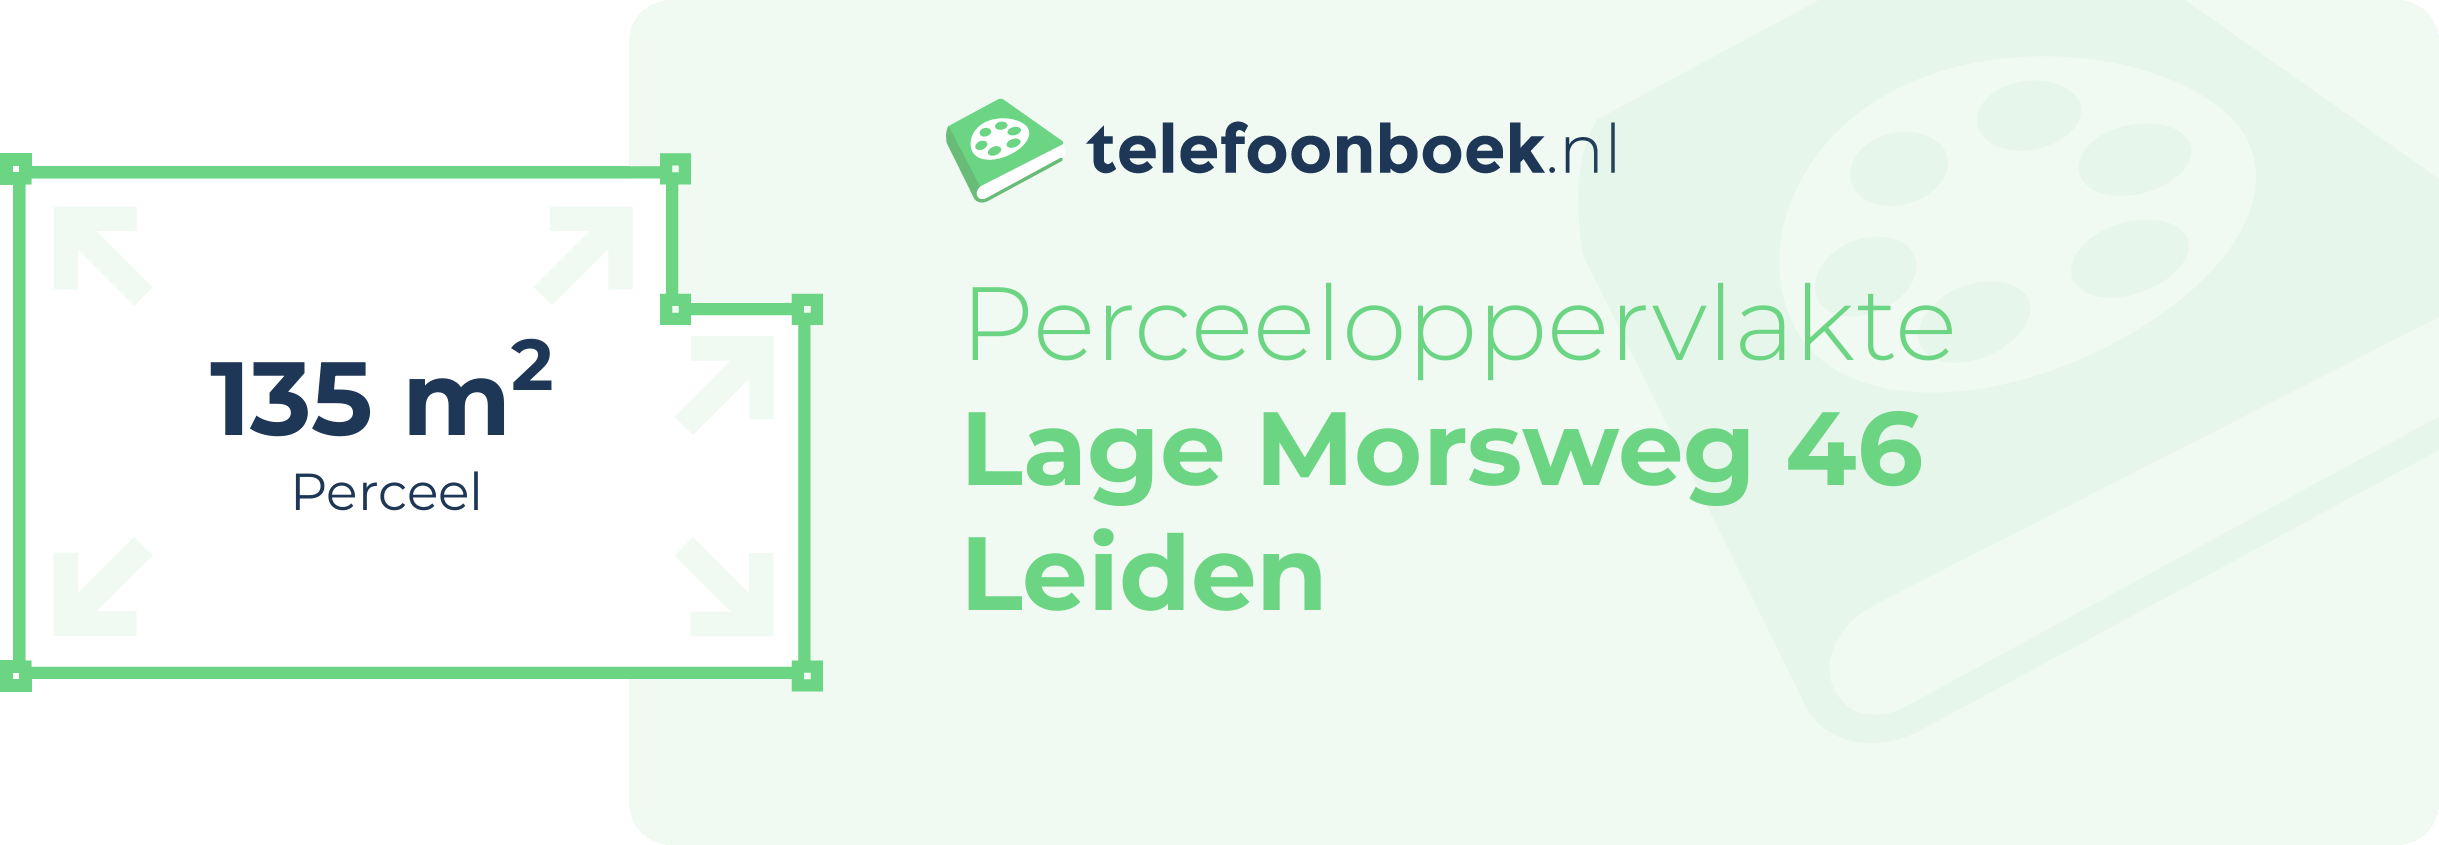 Perceeloppervlakte Lage Morsweg 46 Leiden